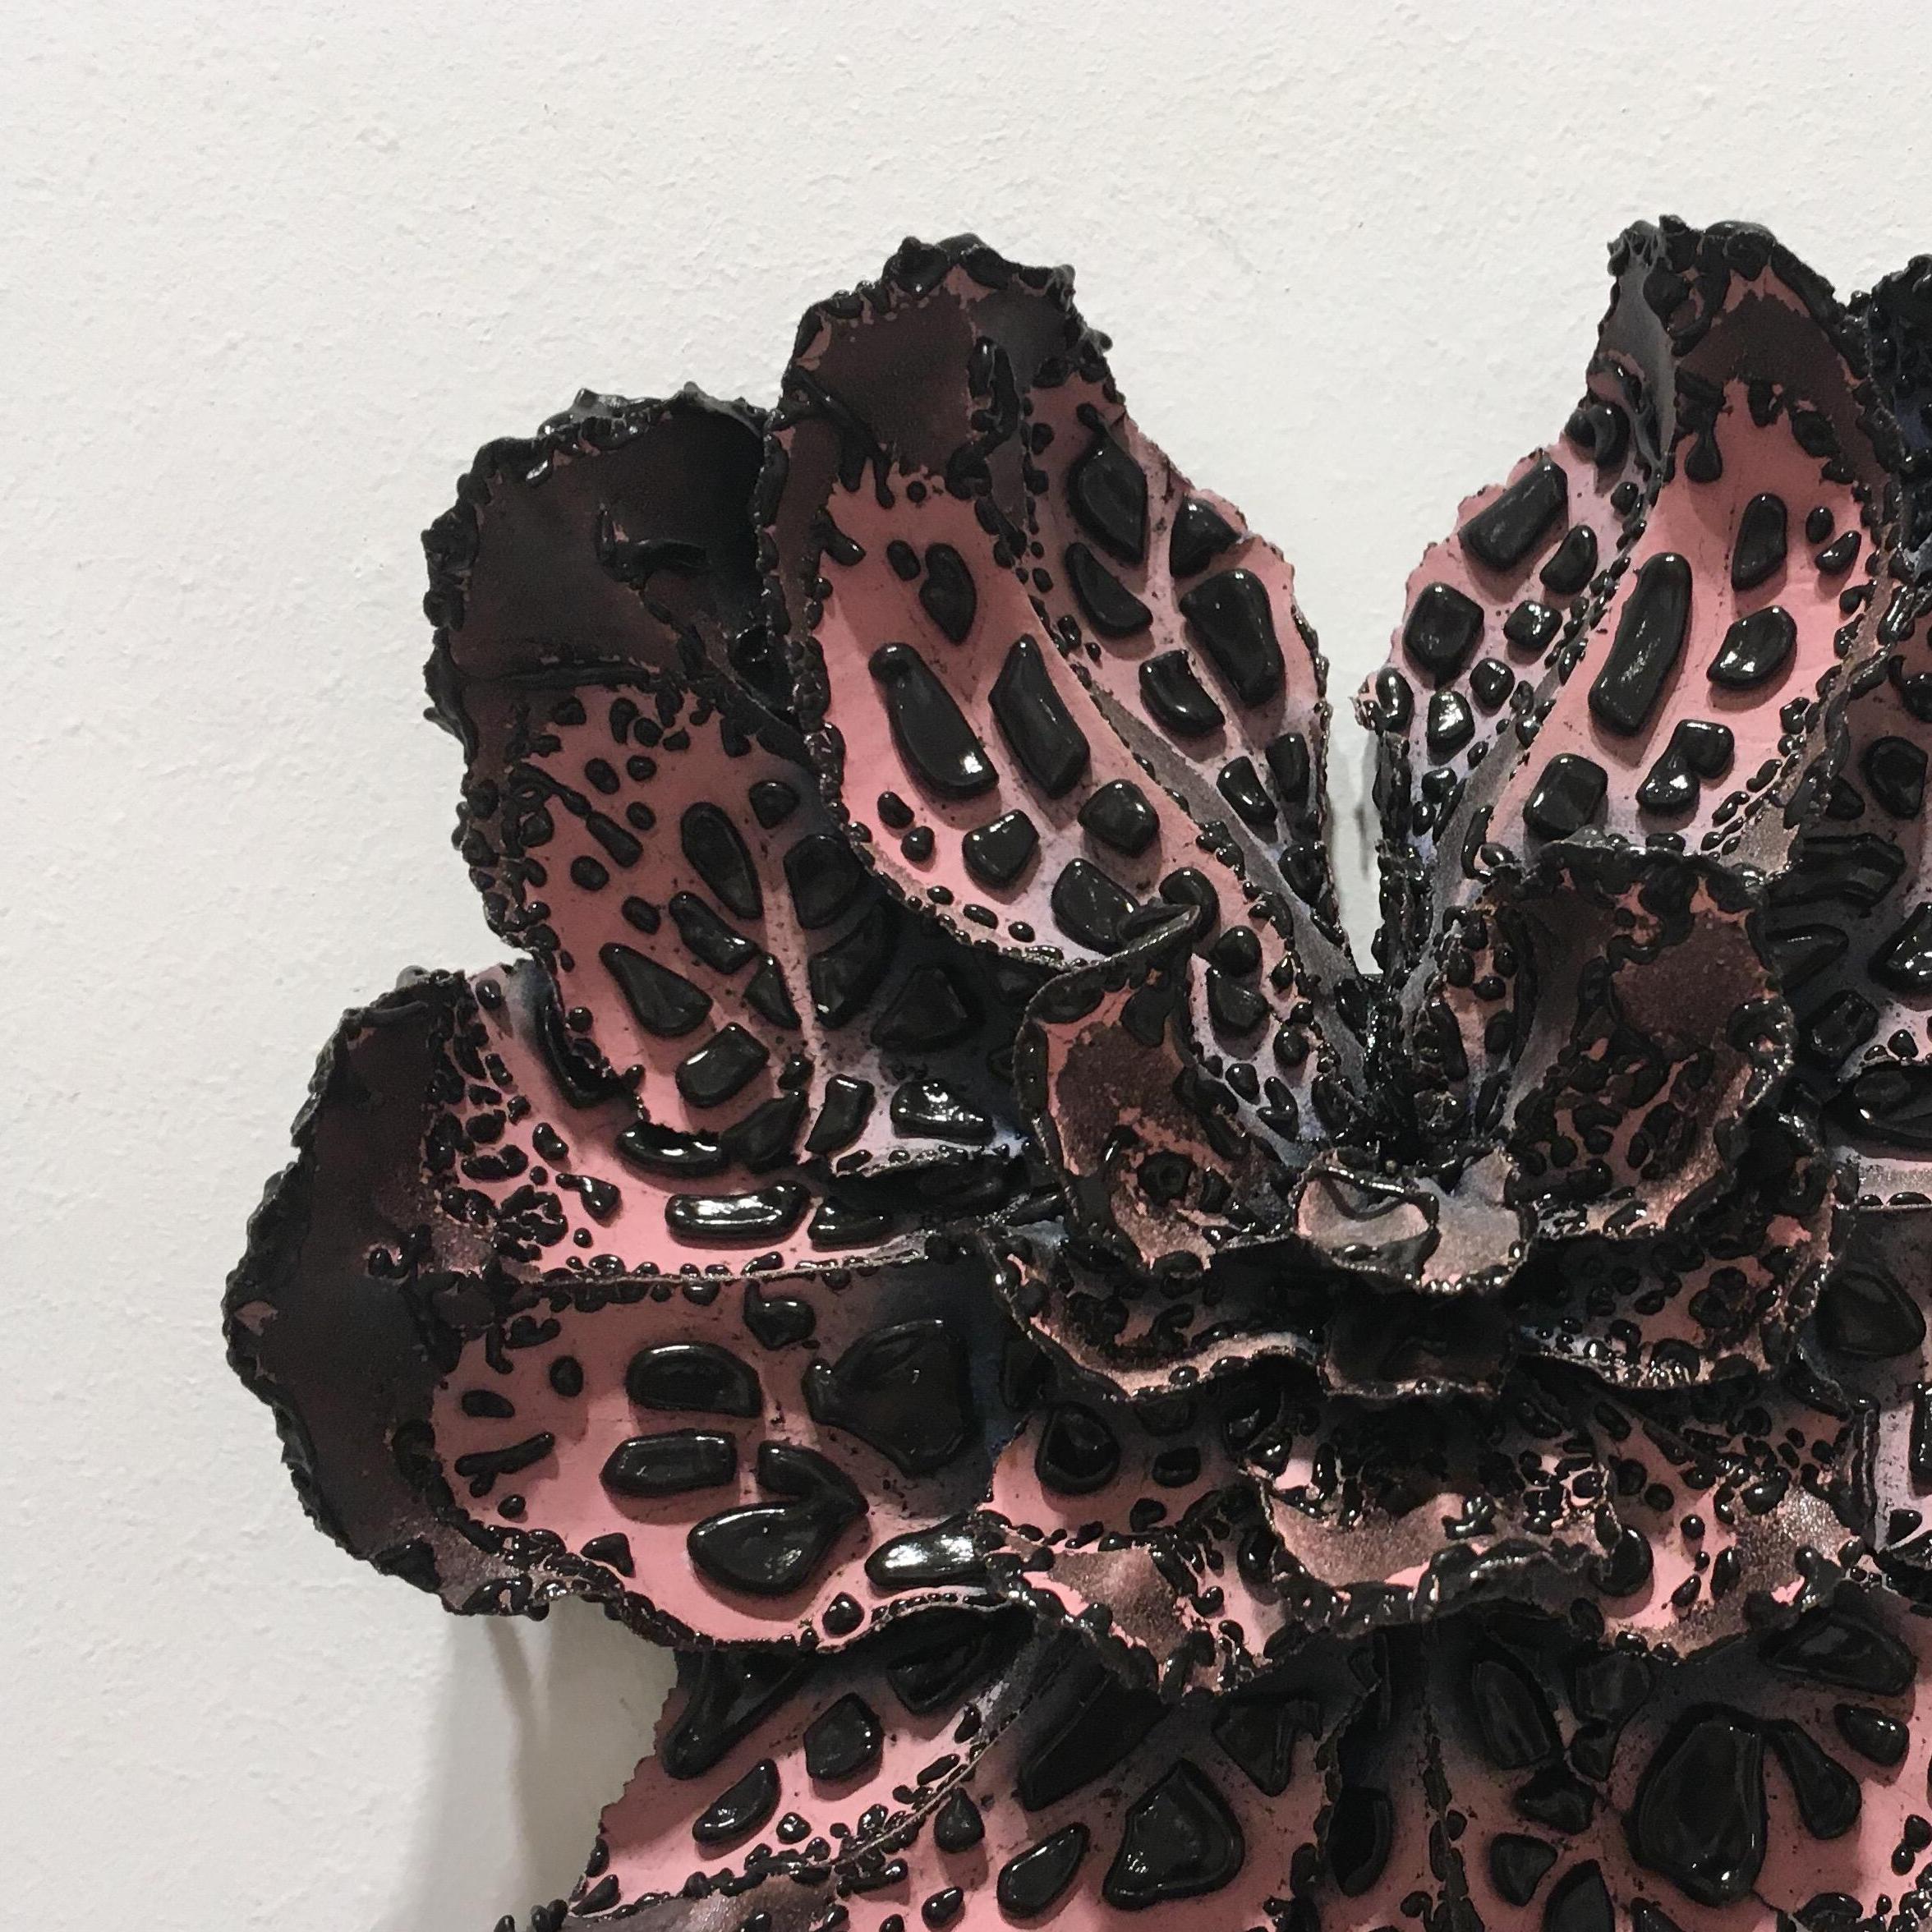 Christopher Adams, Untitled, Biomorphic ceramic sculpture, 2016 2